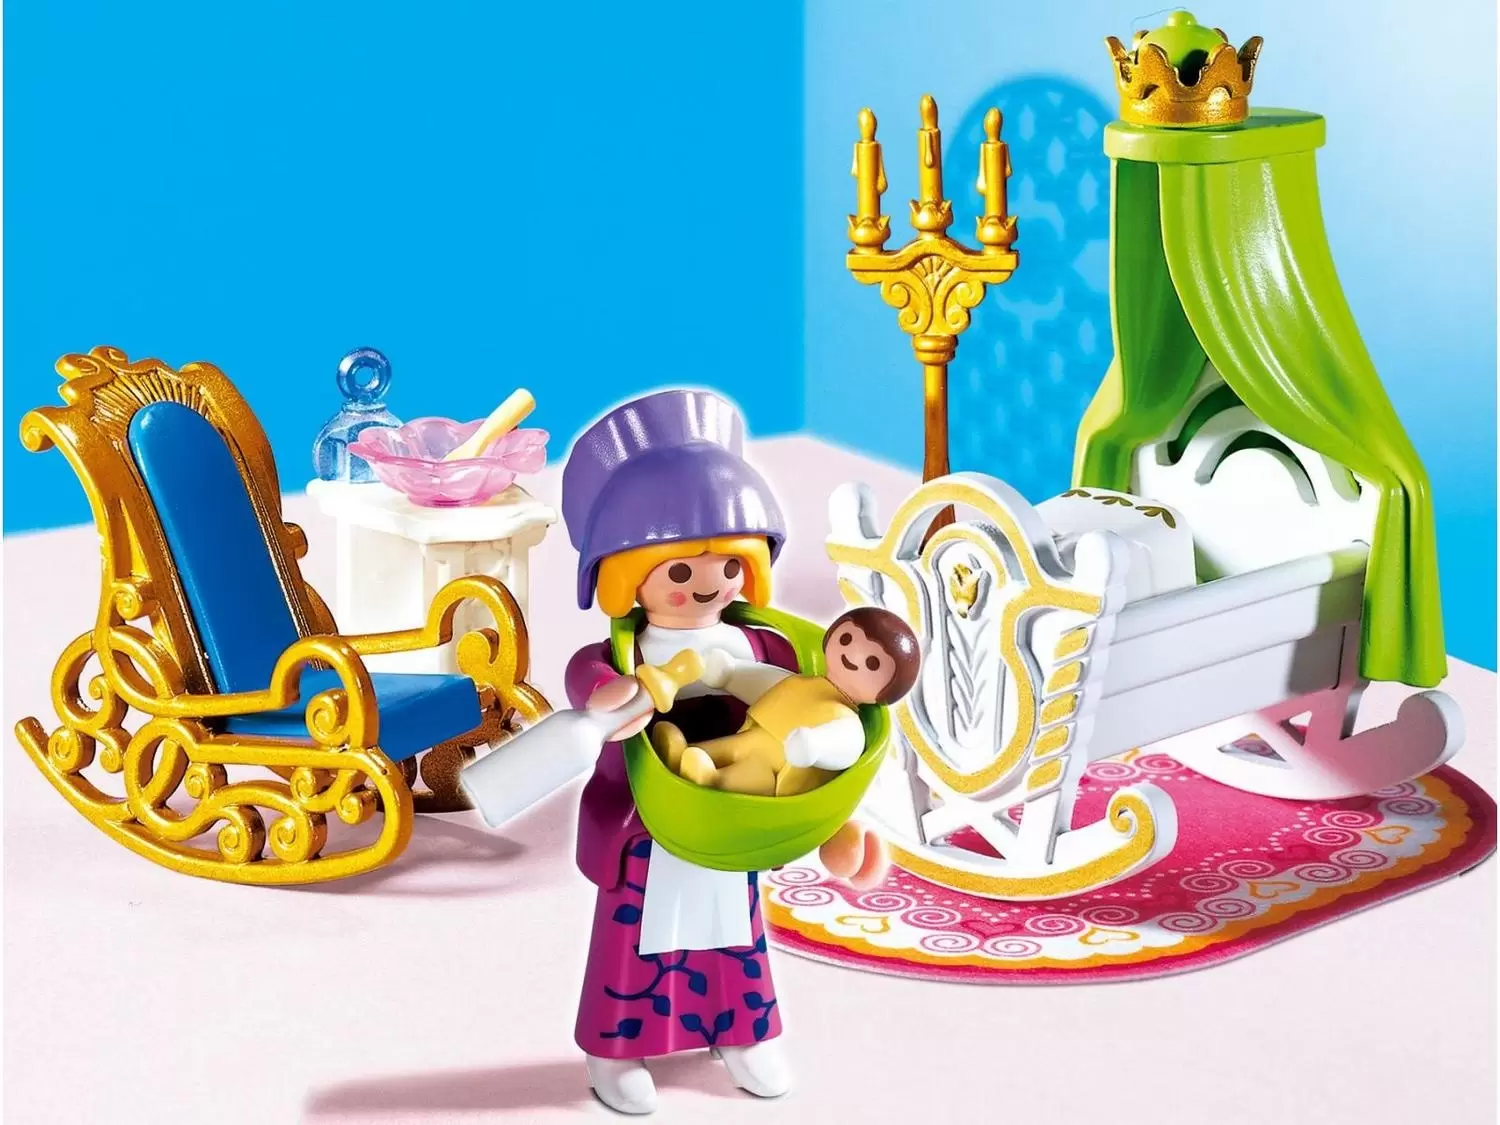 Playmobil Princess - Nursery